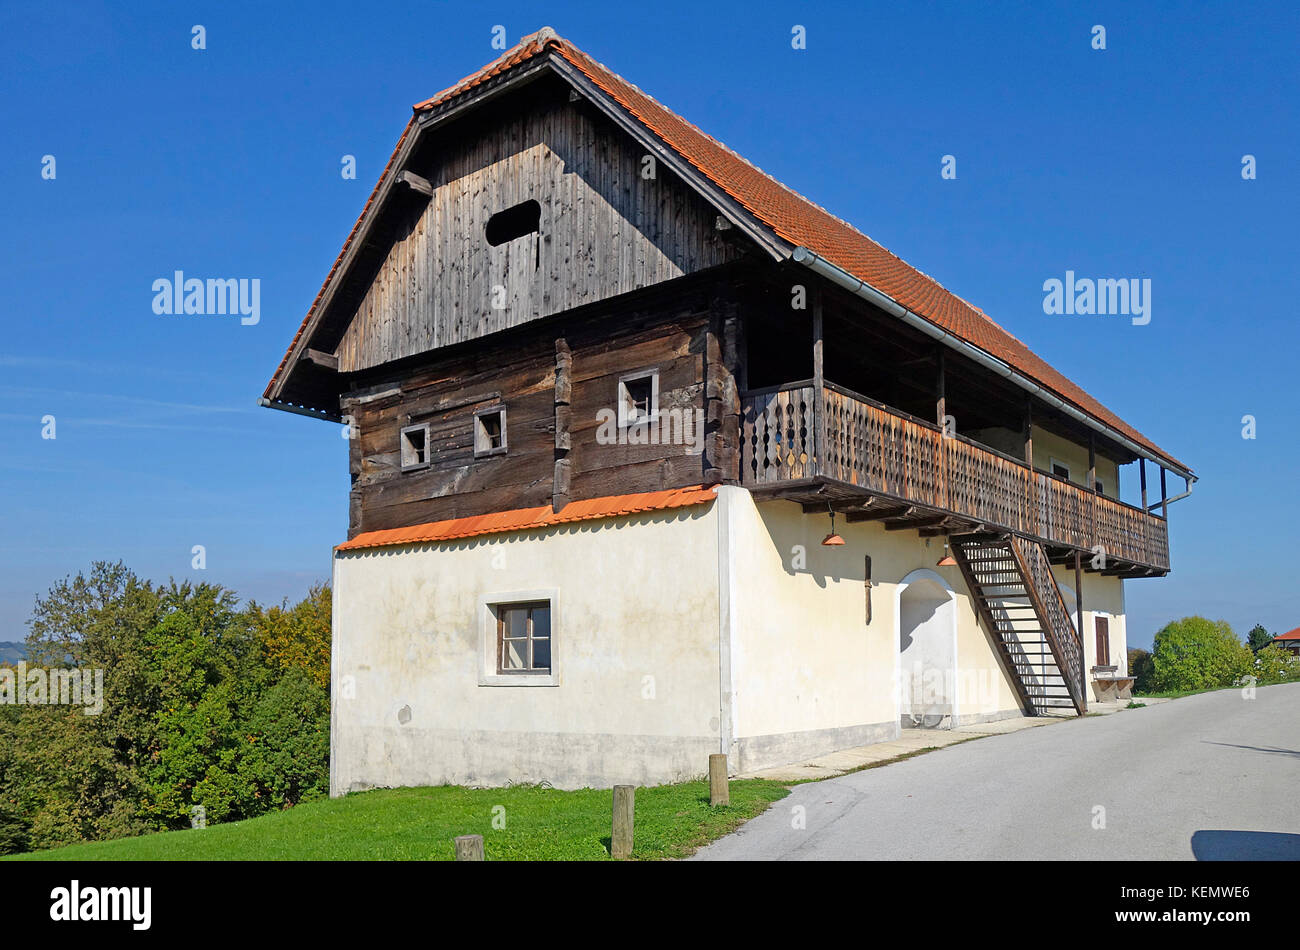 Old countryside renovated house in alpine style. Šmarje pri Jelšah, Štajerska, Slovenia. Stock Photo